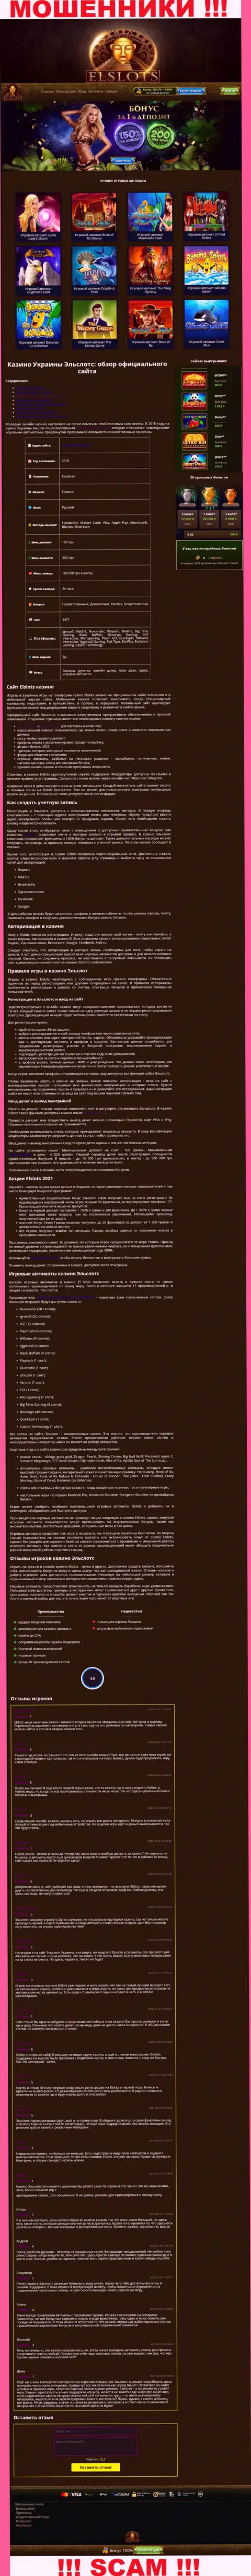 Вид официальной интернет страницы противозаконно действующей компании Ел Слотс